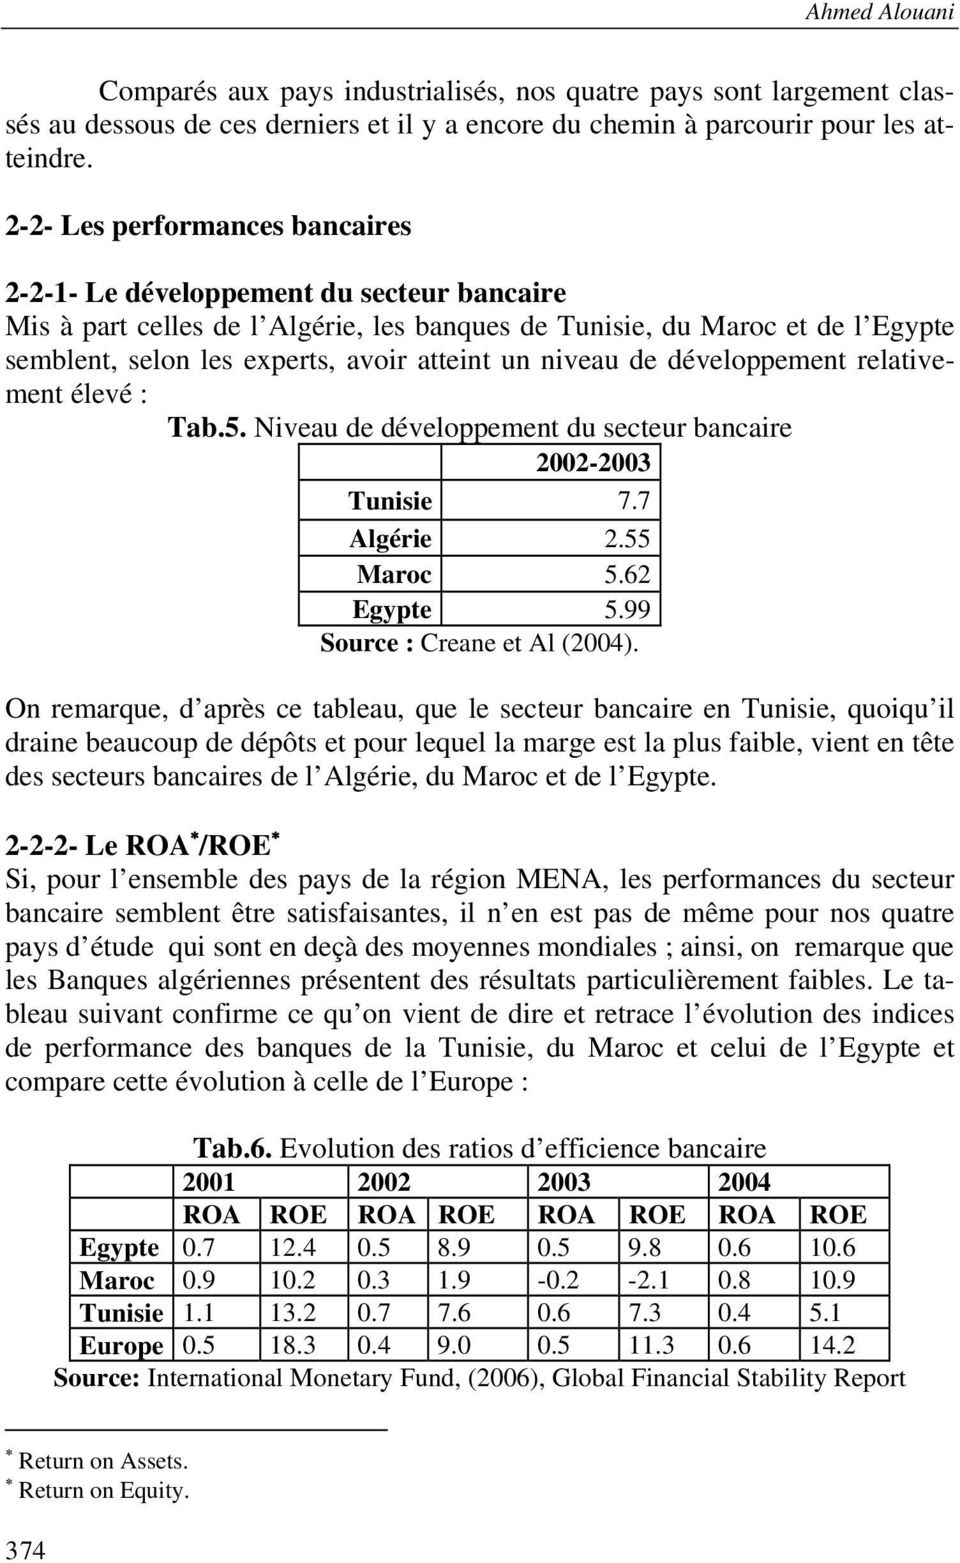 un niveau de développement relativement élevé : Tab.5. Niveau de développement du secteur bancaire 2002-2003 Tunisie 7.7 Algérie 2.55 Maroc 5.62 Egypte 5.99 Source : Creane et Al (2004).